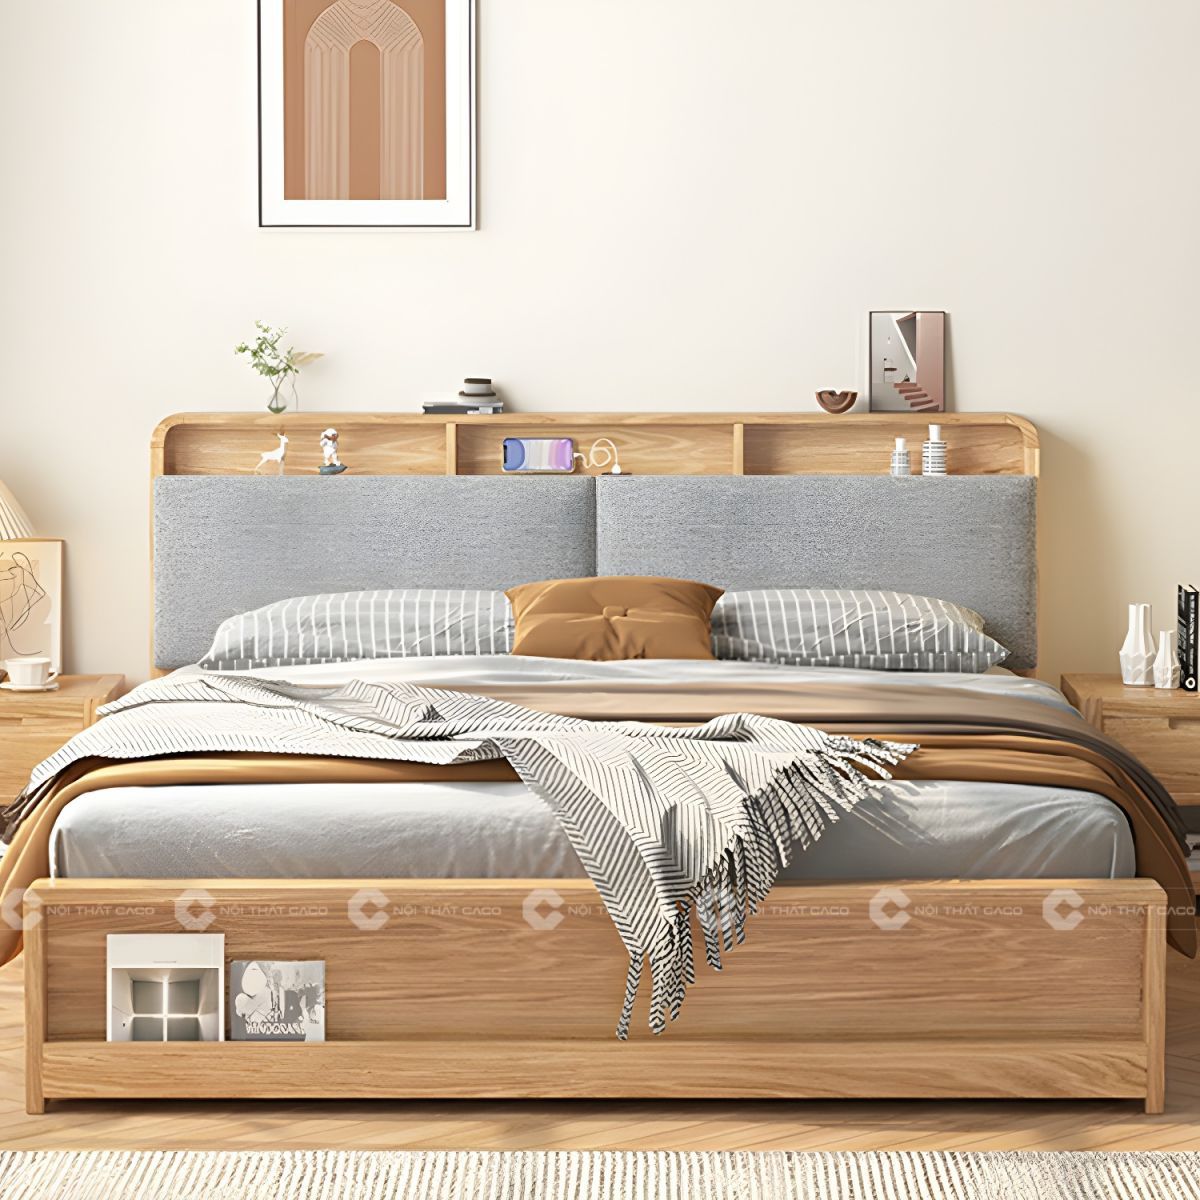 Giường ngủ gỗ tự nhiên bọc nệm đầu giường